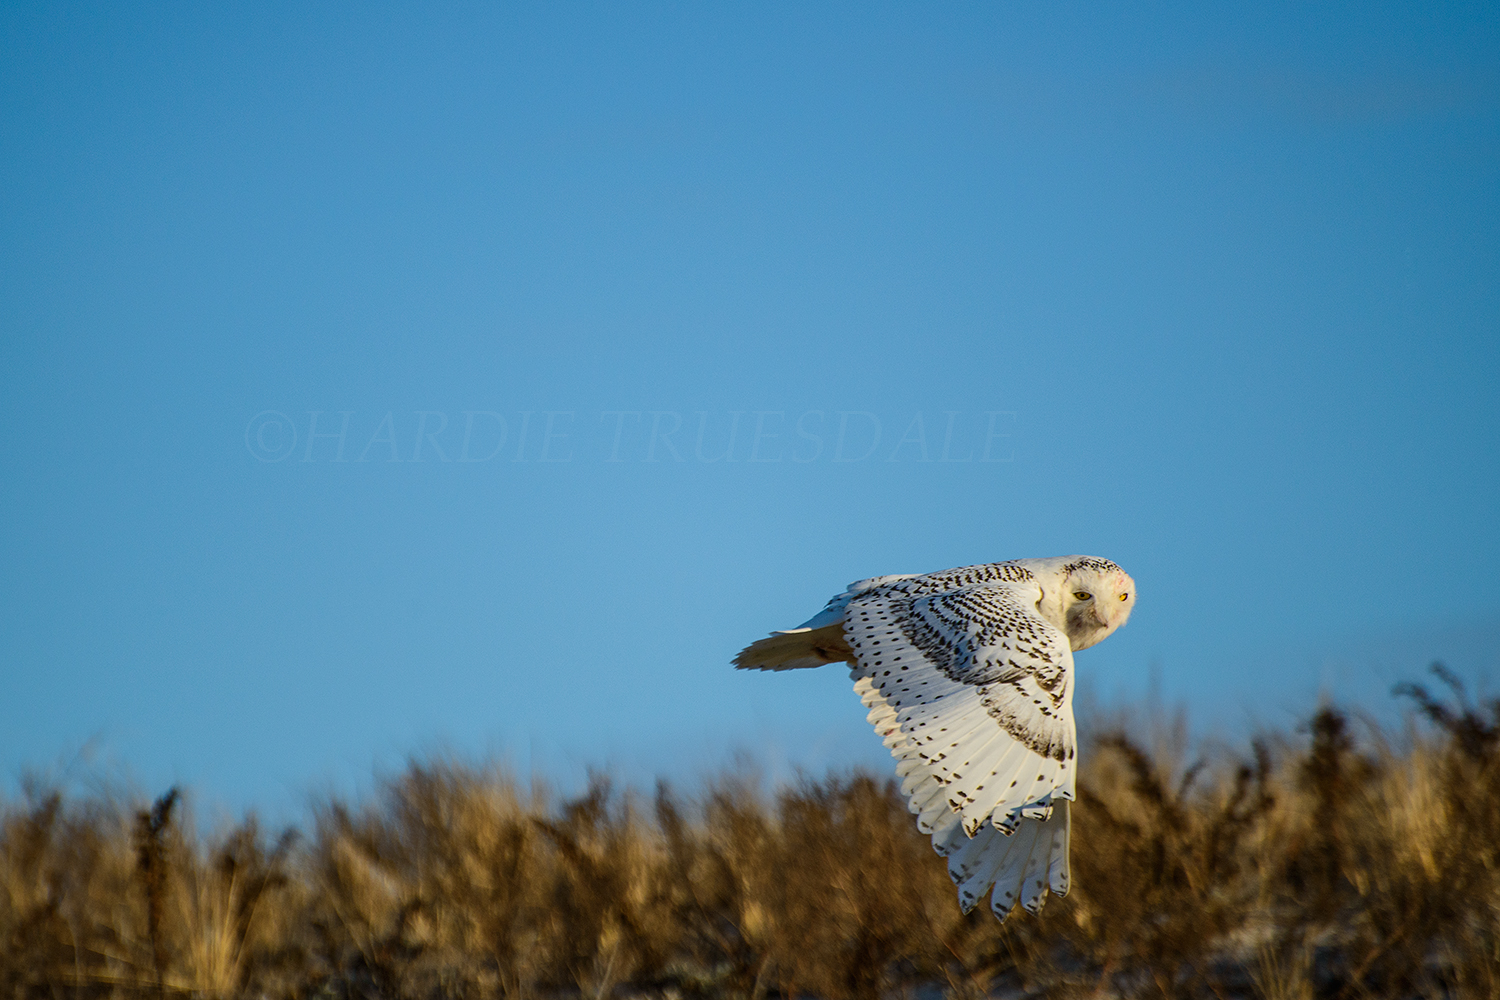  BrdNE#23 "Angry Owl" Snowy Owl, Cape Cod, MA 